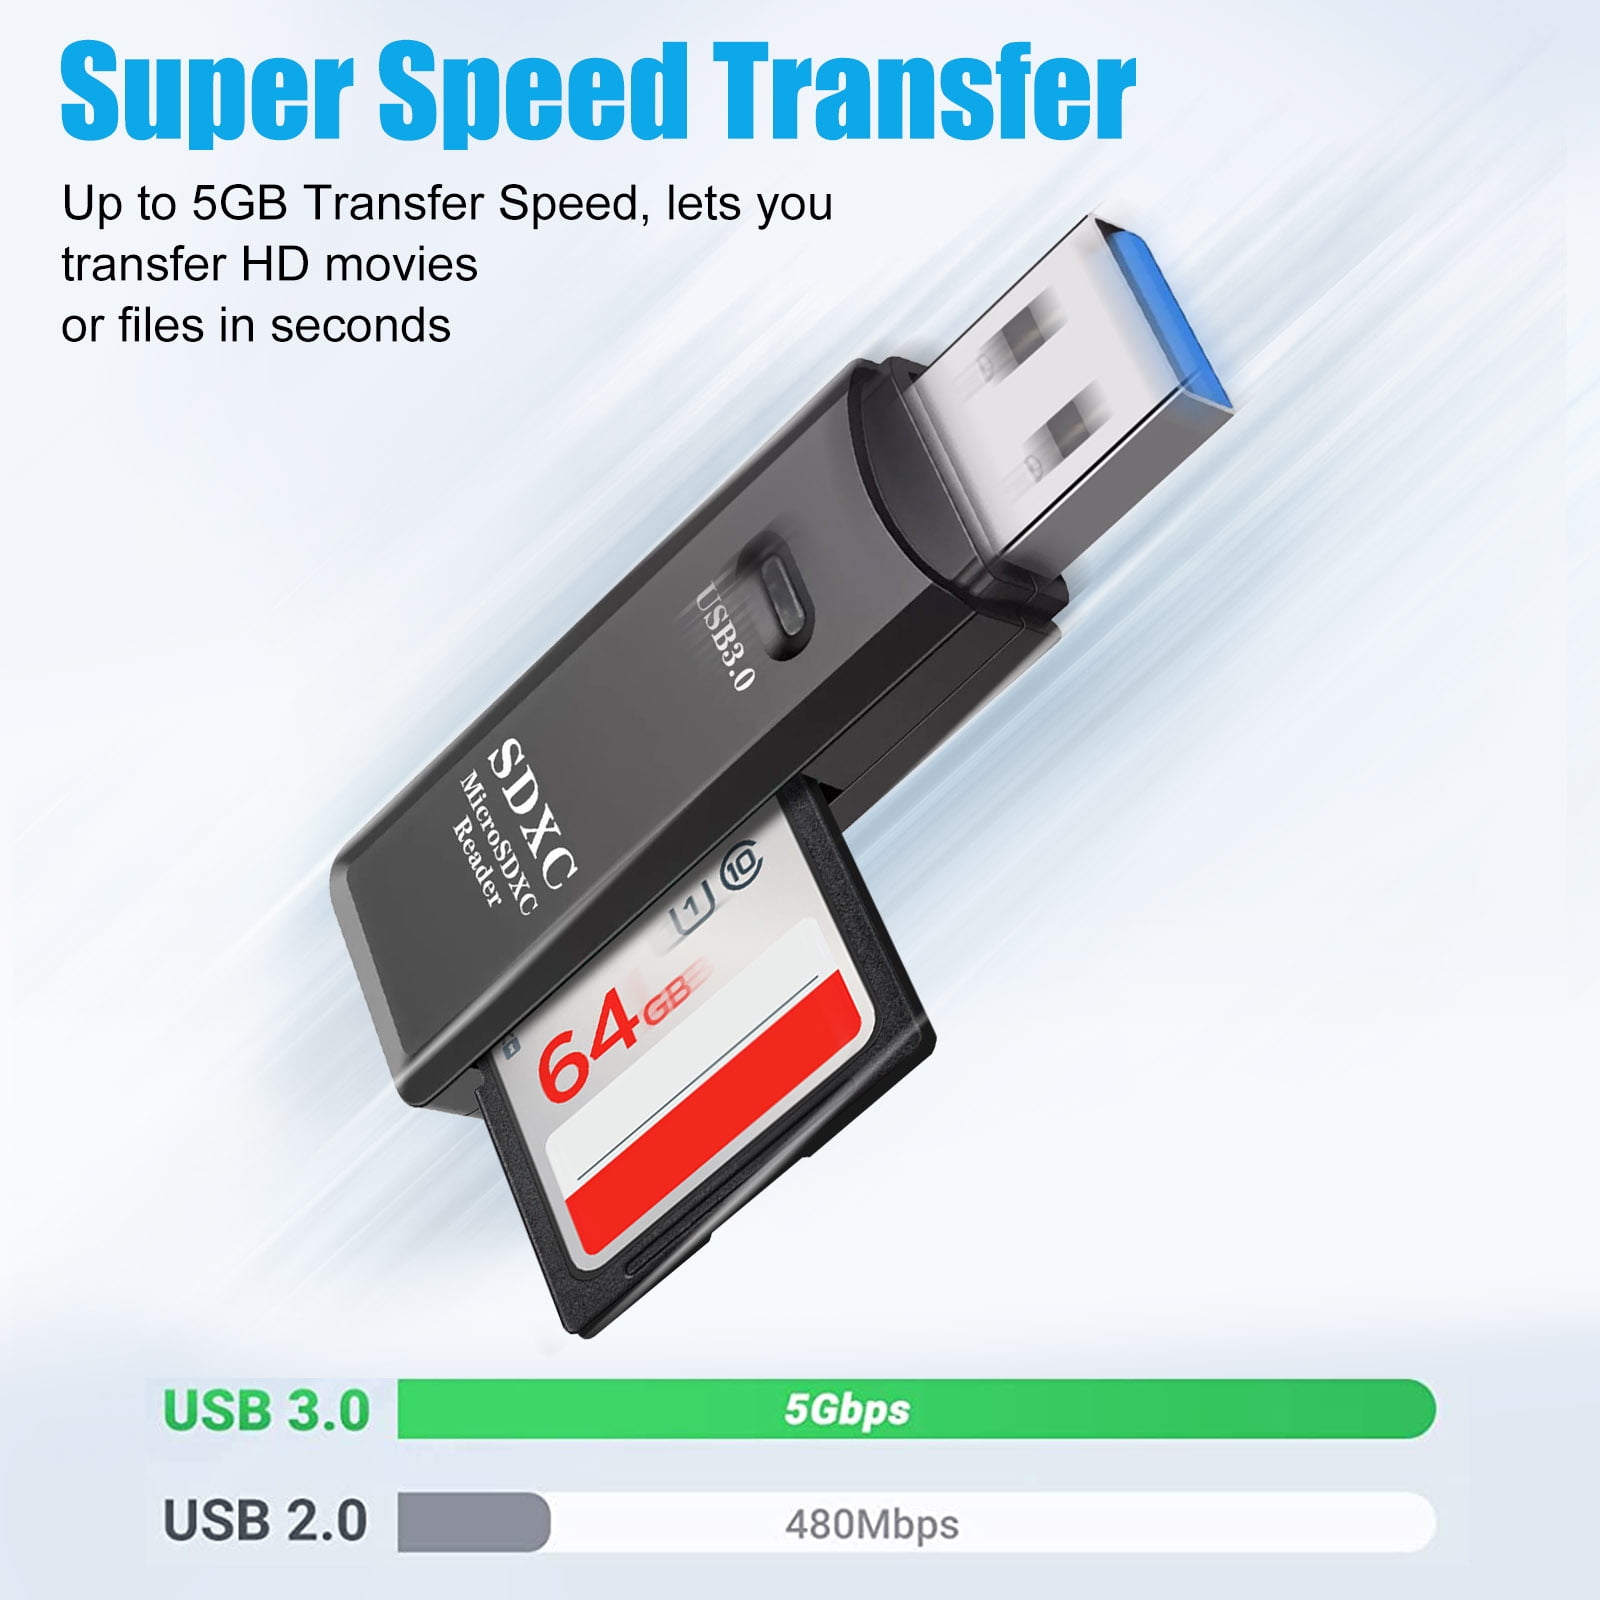 USB 3.0 Card Reader, TSV TF Card/SD Memory Reader Adapter